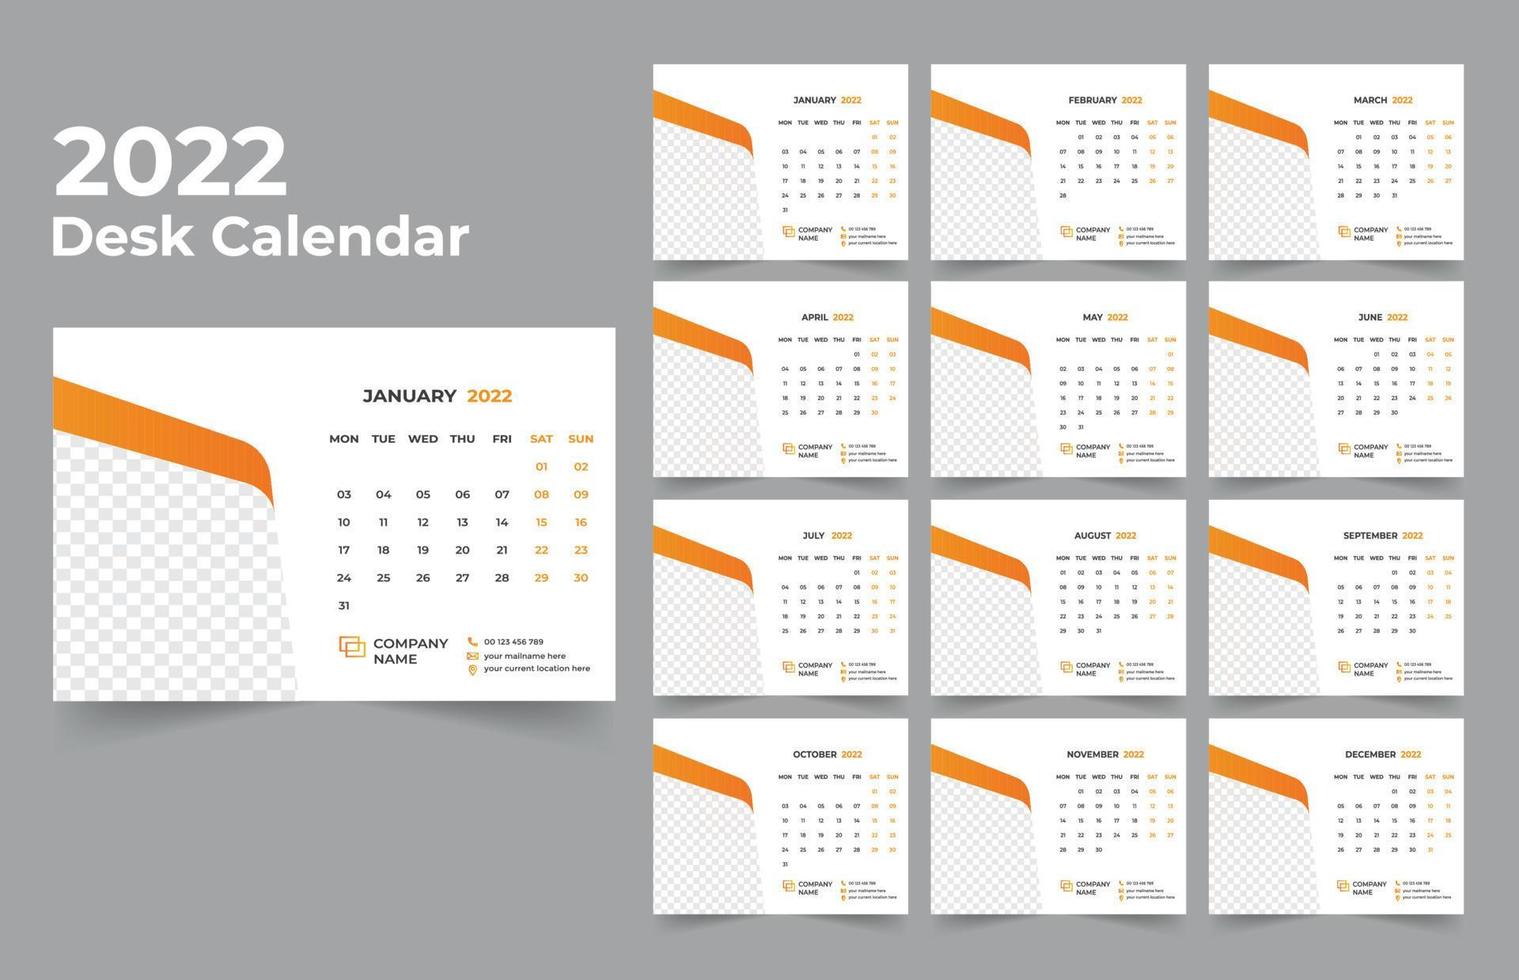 diseño de calendario de escritorio 2022 conjunto de plantillas de 12 meses, la semana comienza el lunes, diseño de papelería, planificador de calendario vector